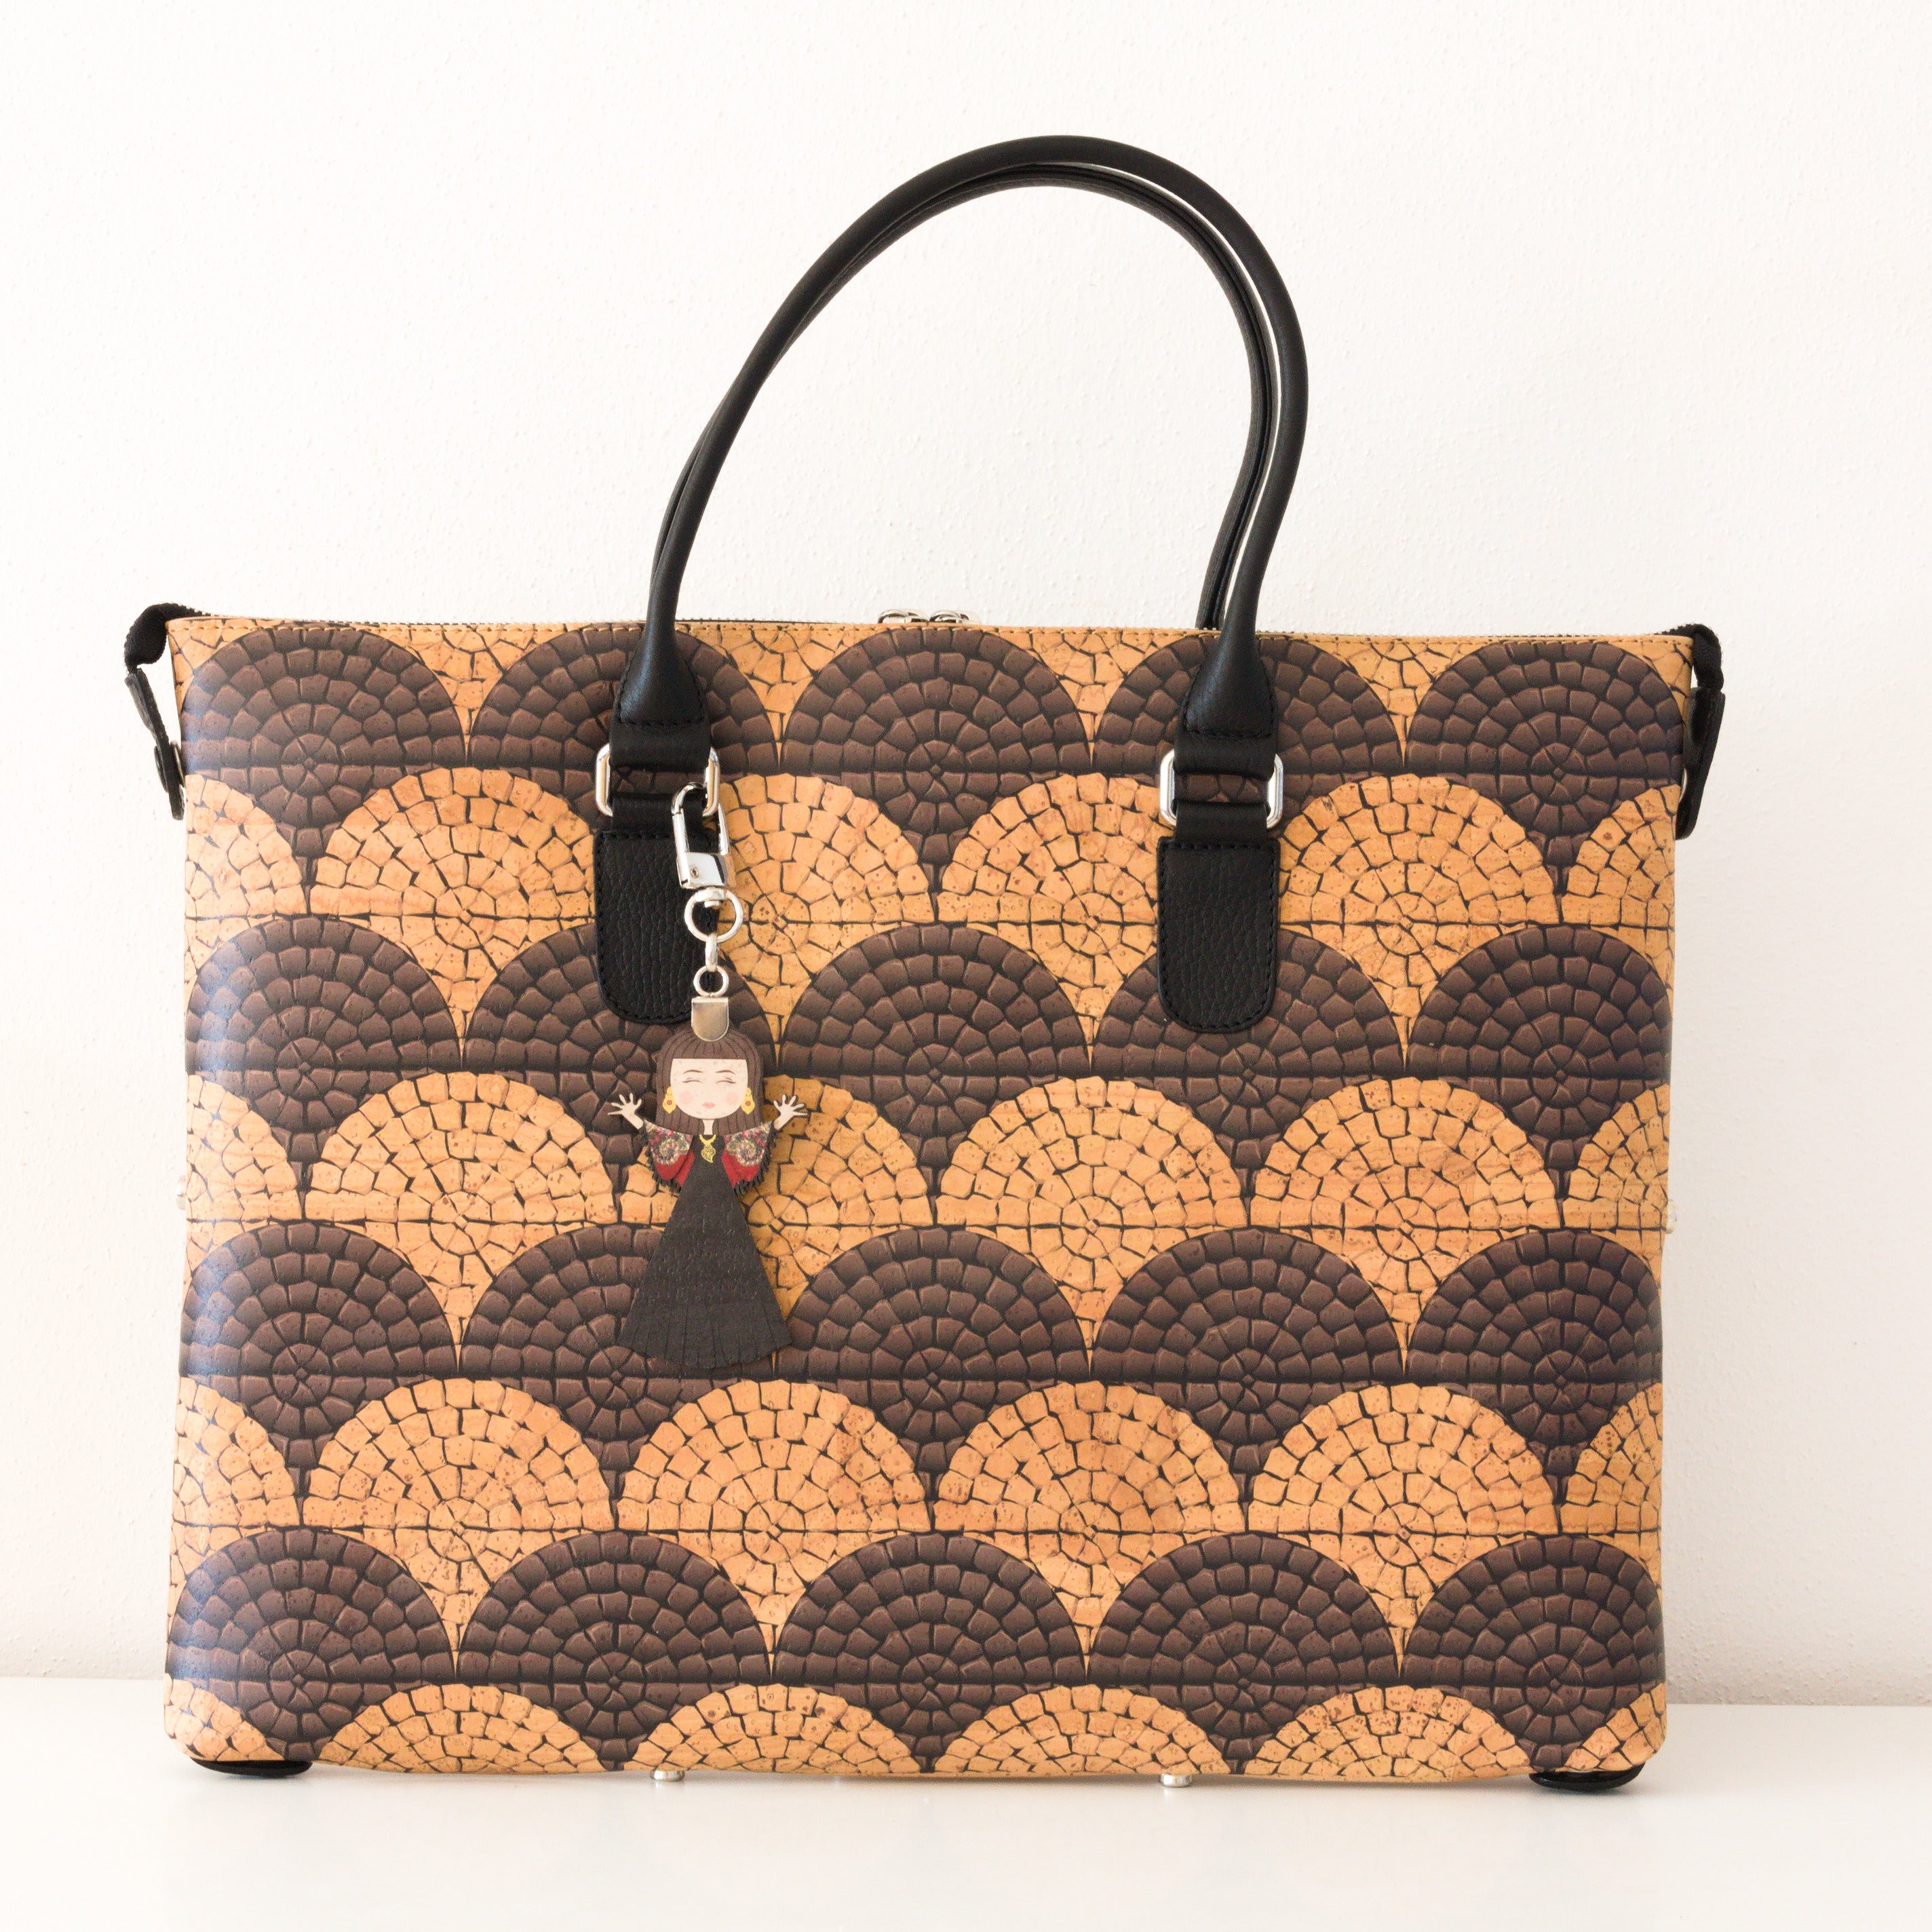 Kork Handtasche 3in1 * große Variante * verschiedene Designs * Umhängetasche für Frauen * Crossbody * Shopper * handmade in Portugal